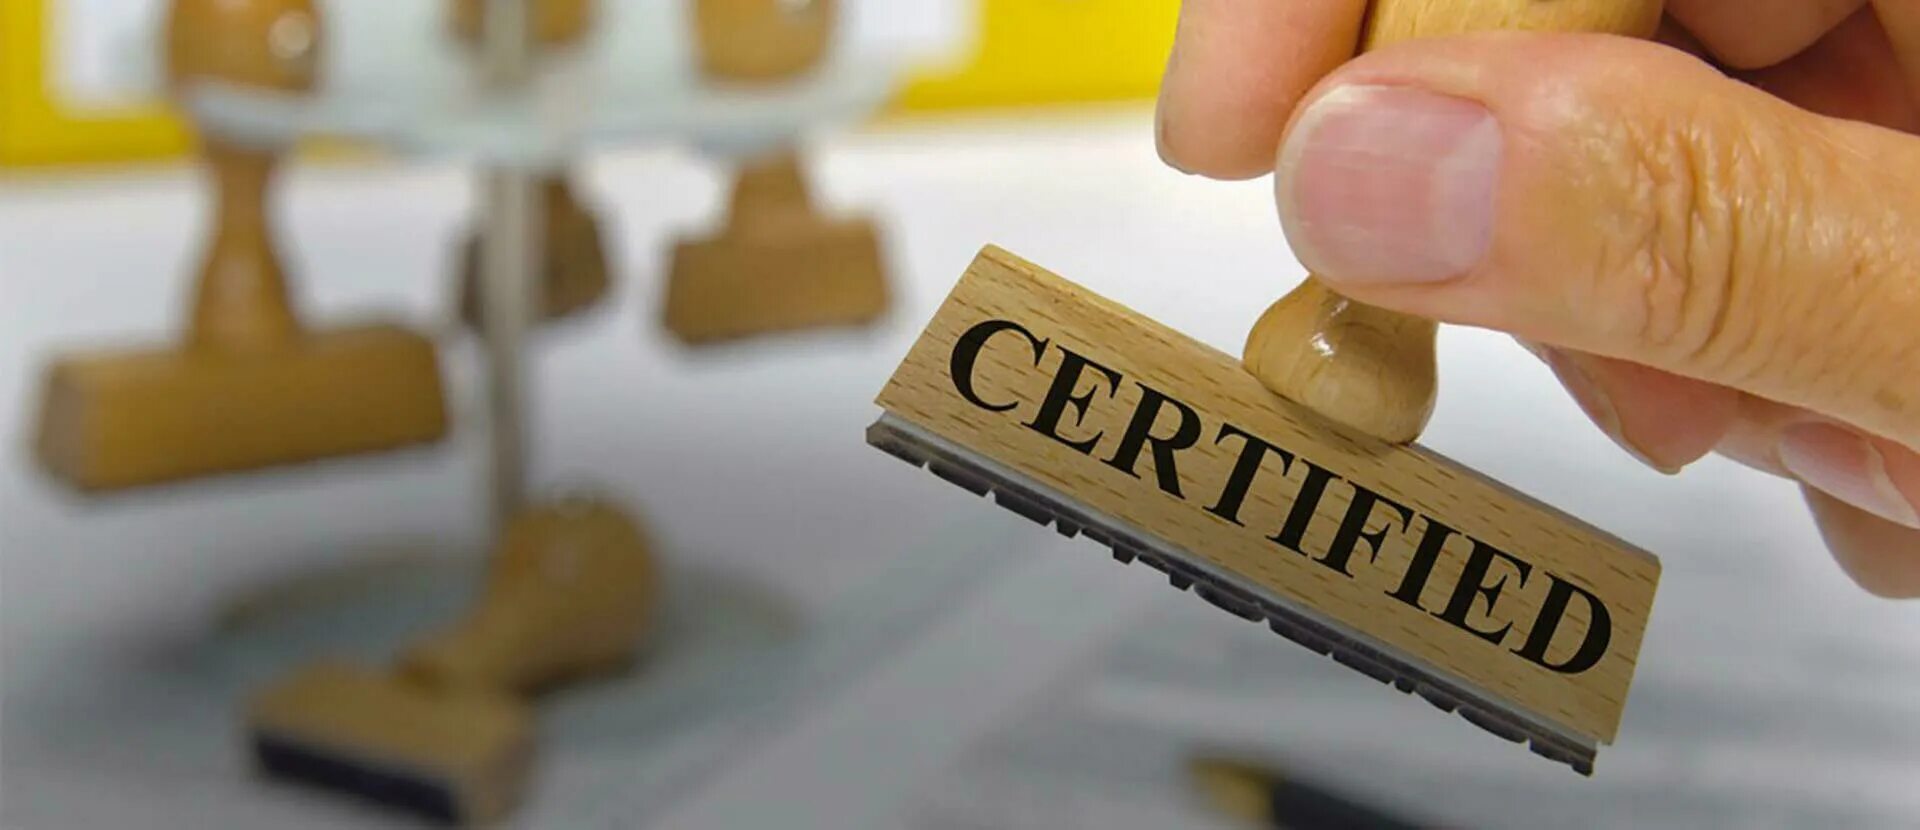 Сертификация продукции. Сертификация продукции и услуг. Сертификация импортных товаров. Сертификация продукции картинки. Про сертификацию